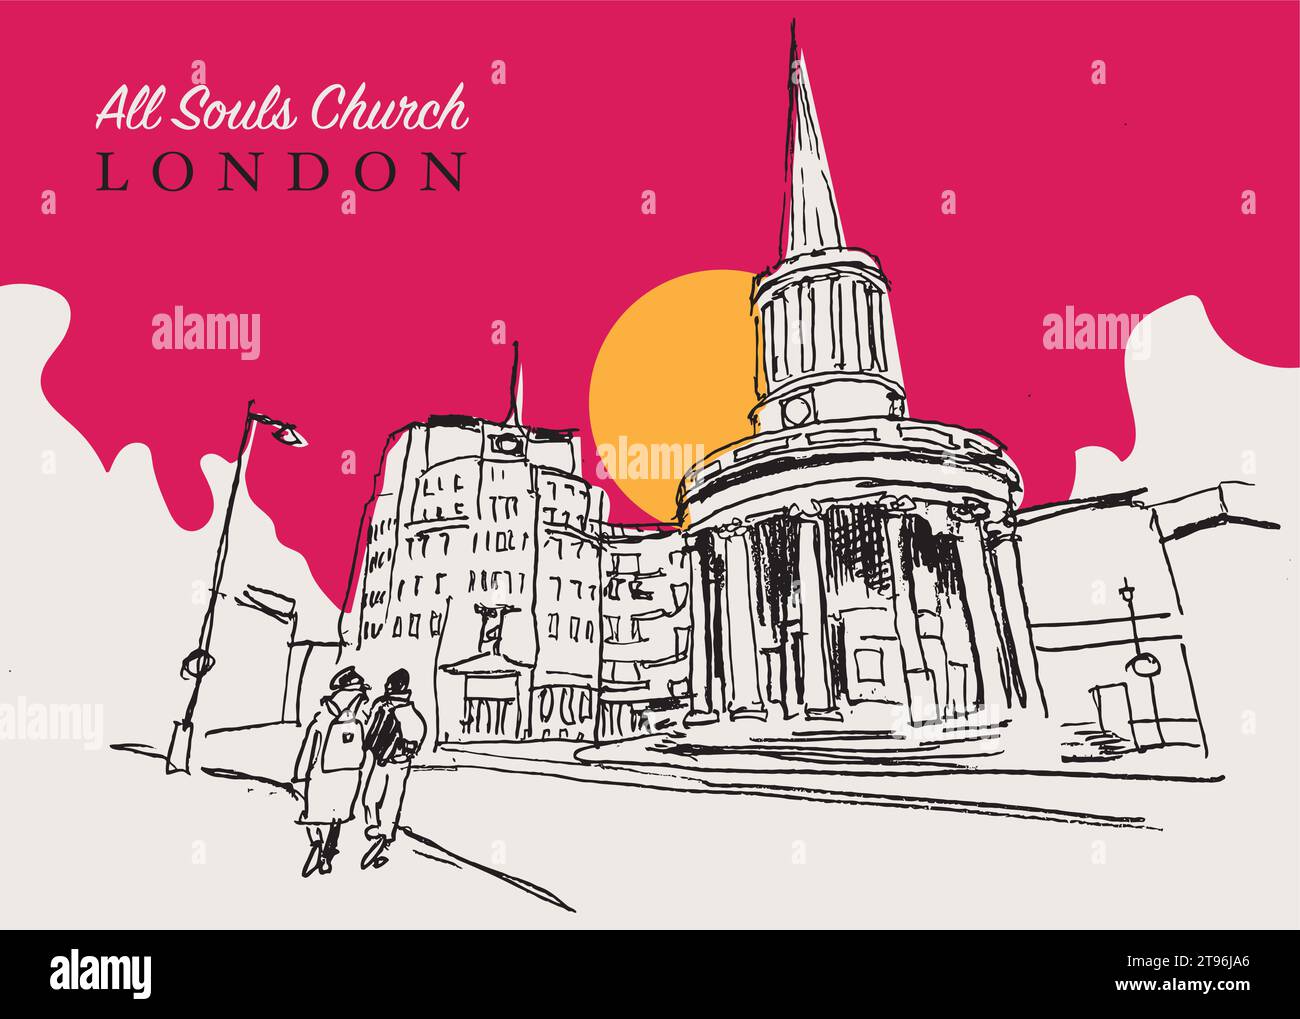 Vector Hand Drawn Sketch Illustration of the All Souls Church ist eine evangelische anglikanische Kirche im Zentrum Londons Stock Vektor